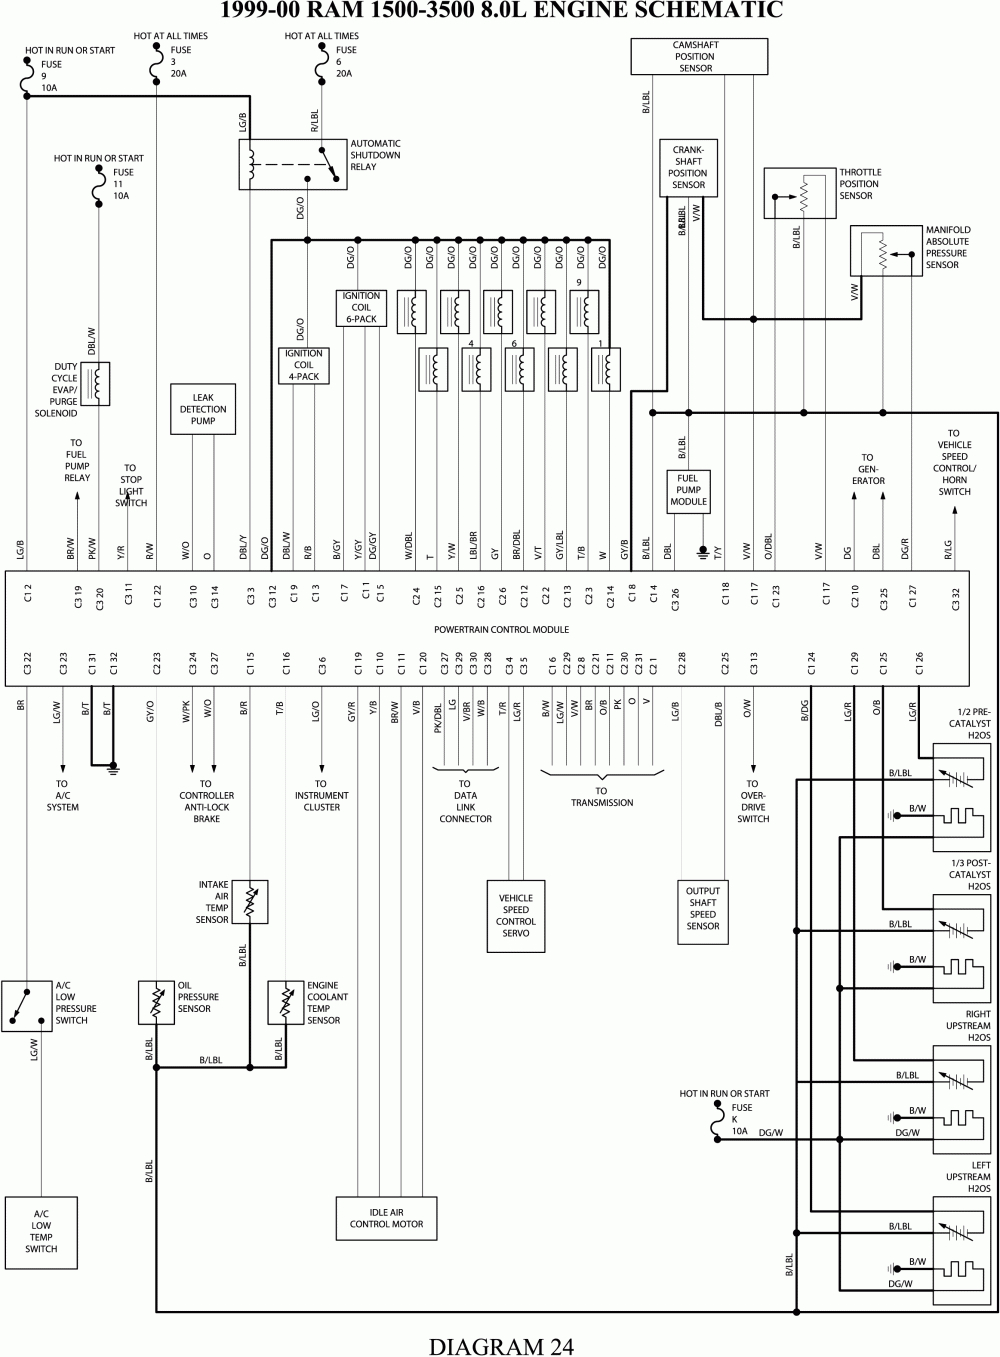 Dodge Truck Wiring - Wiring Diagram - 7 Pin Wiring Diagram